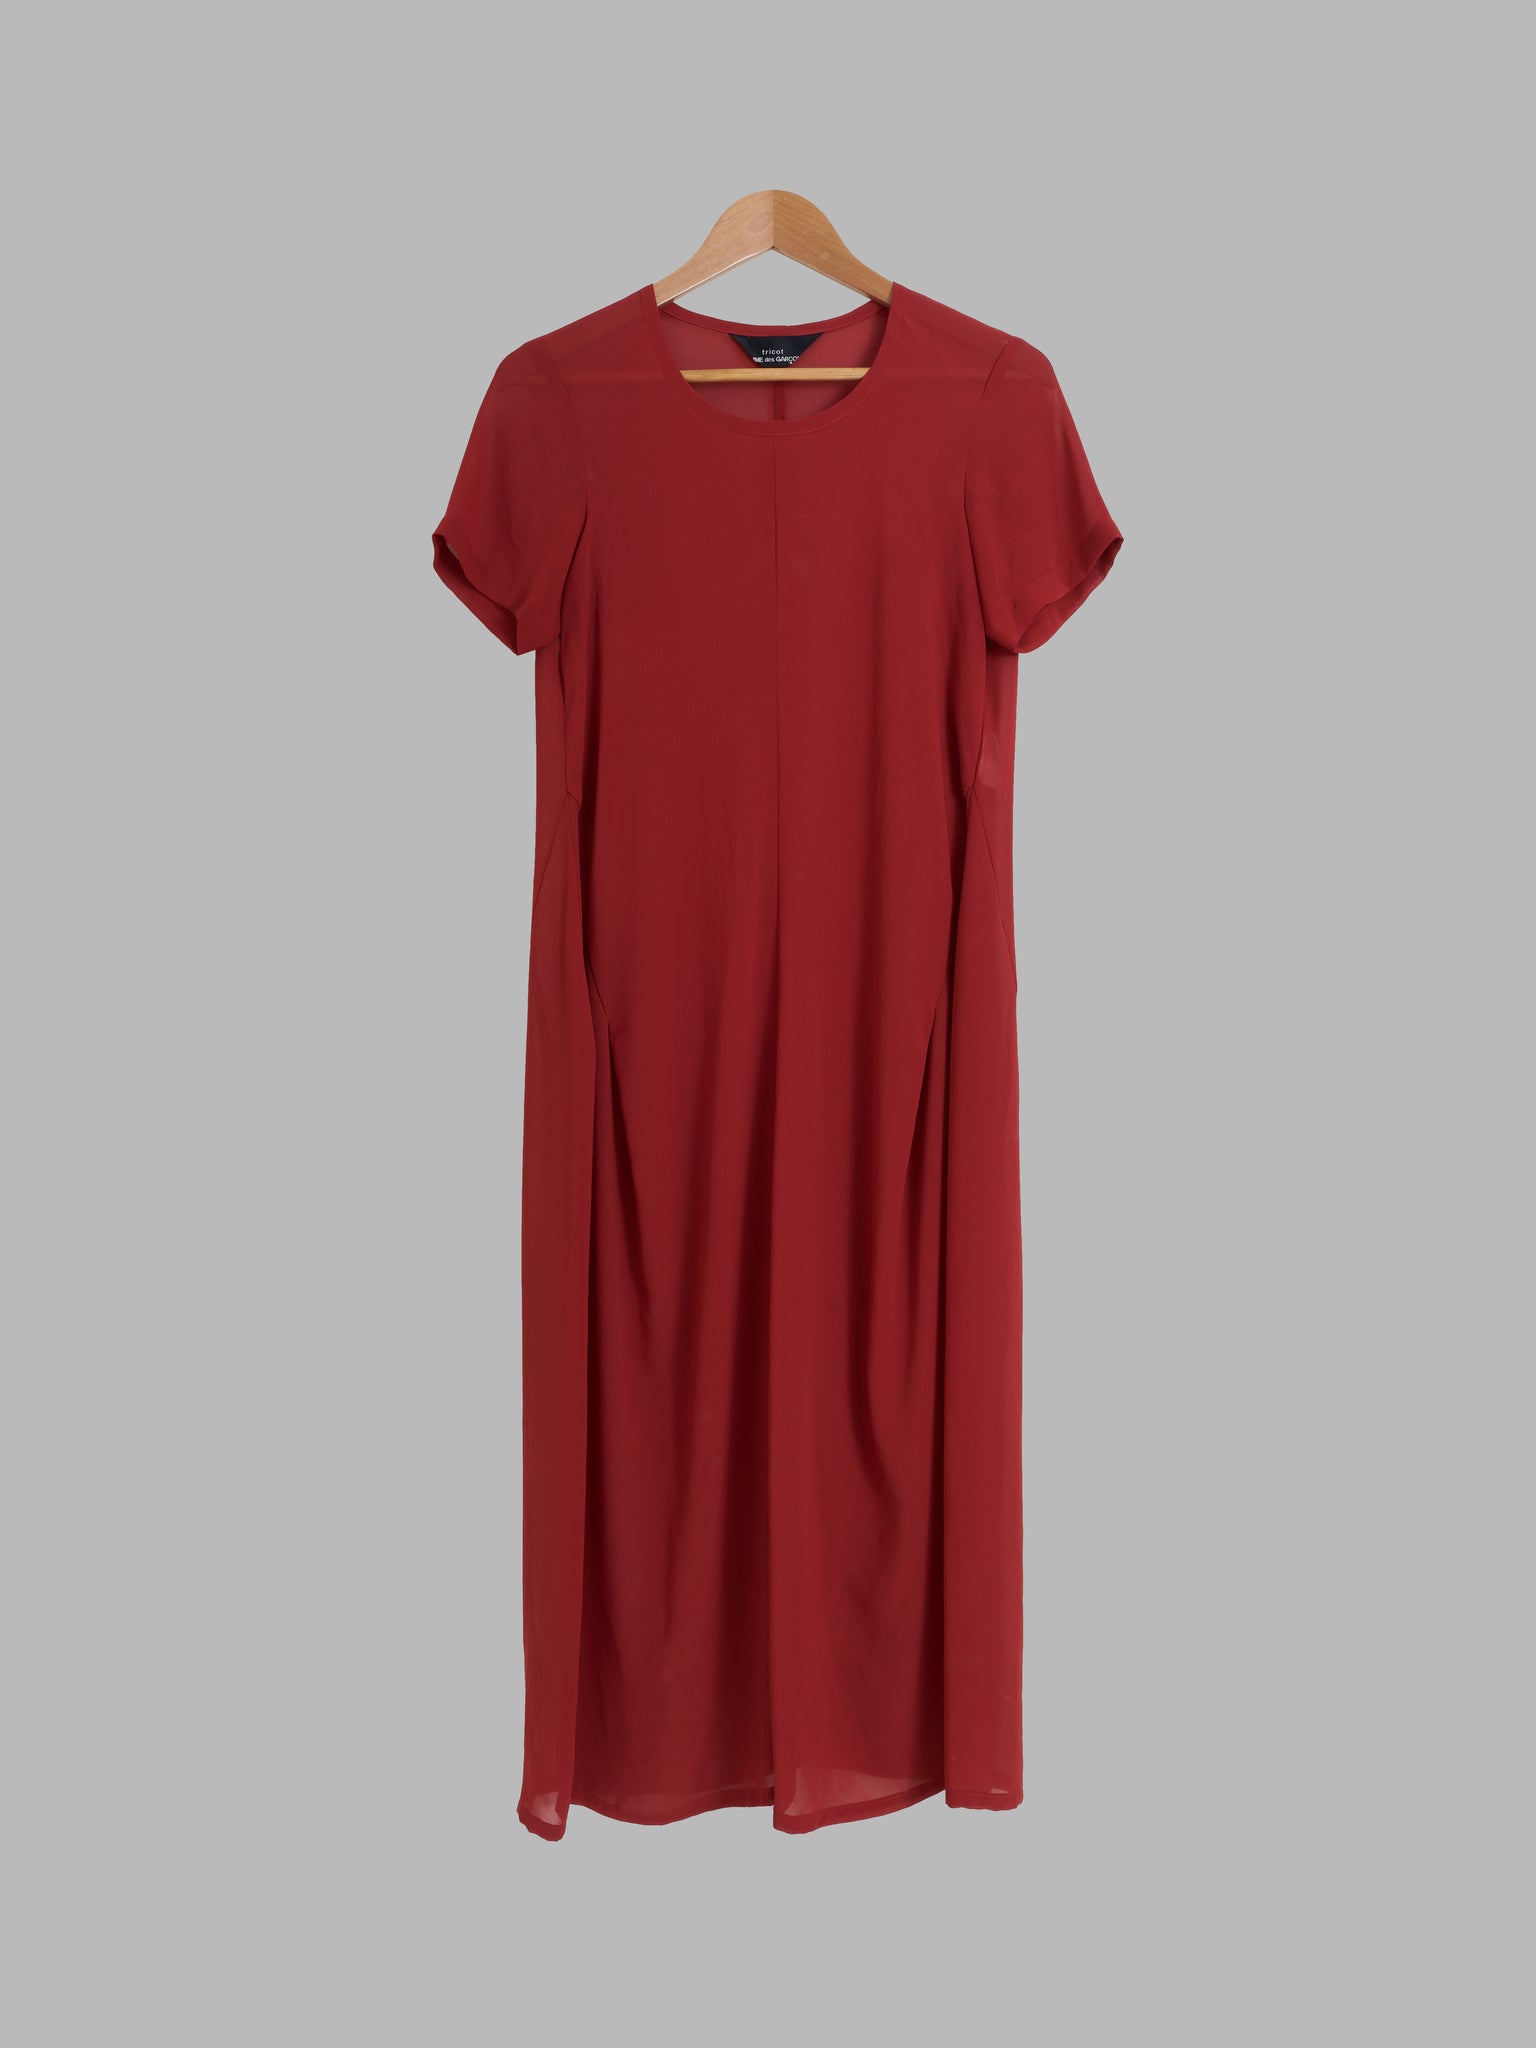 Comme des Garcons 1996 sheer burgundy polyester crepe short sleeve dress - S M